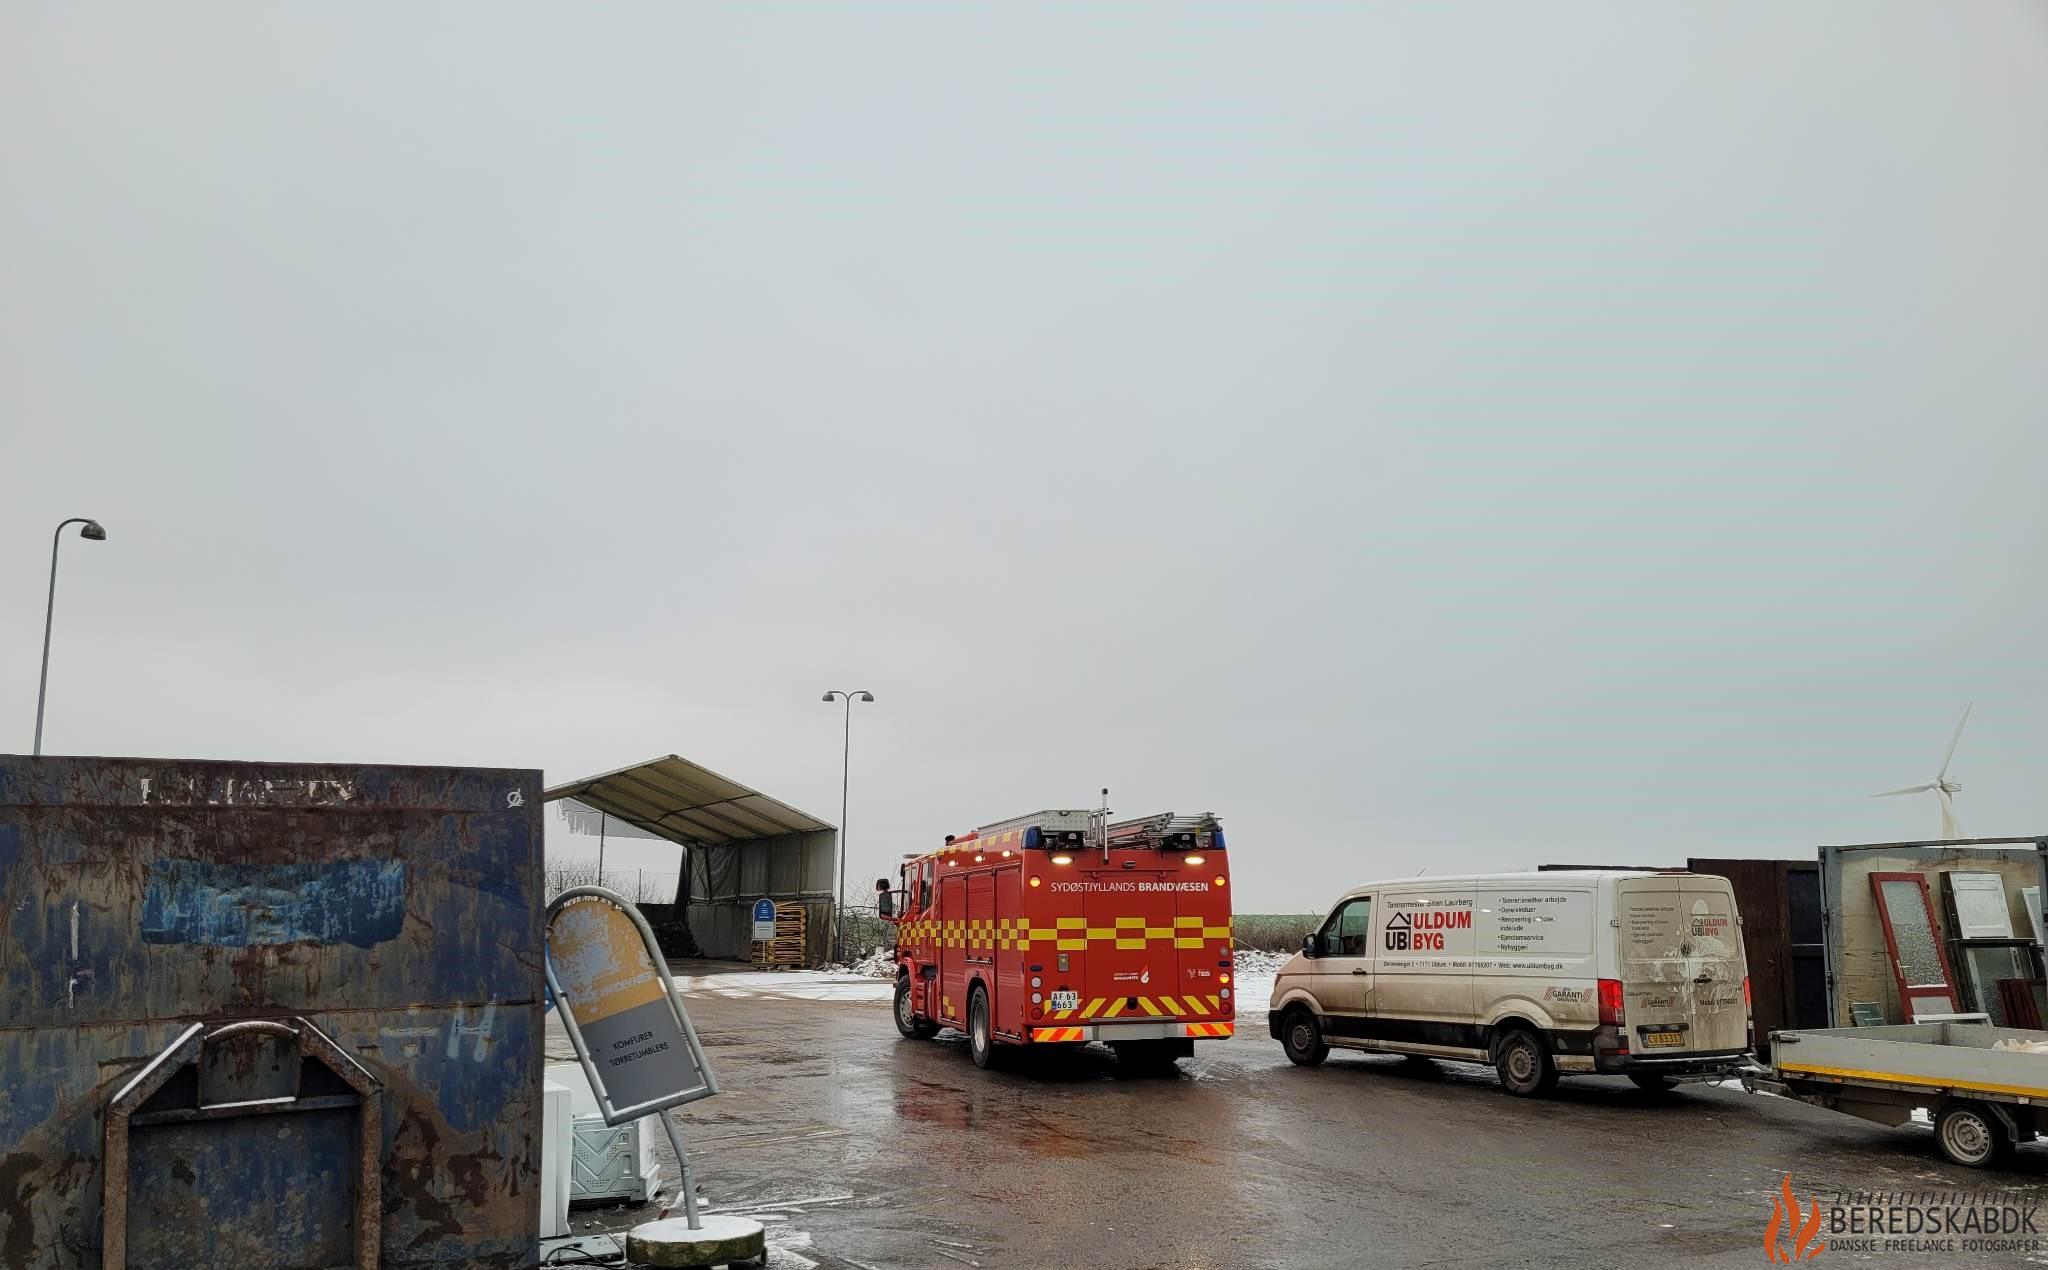 10/12-22 Brand i container på Skrædderbakken i Uldum